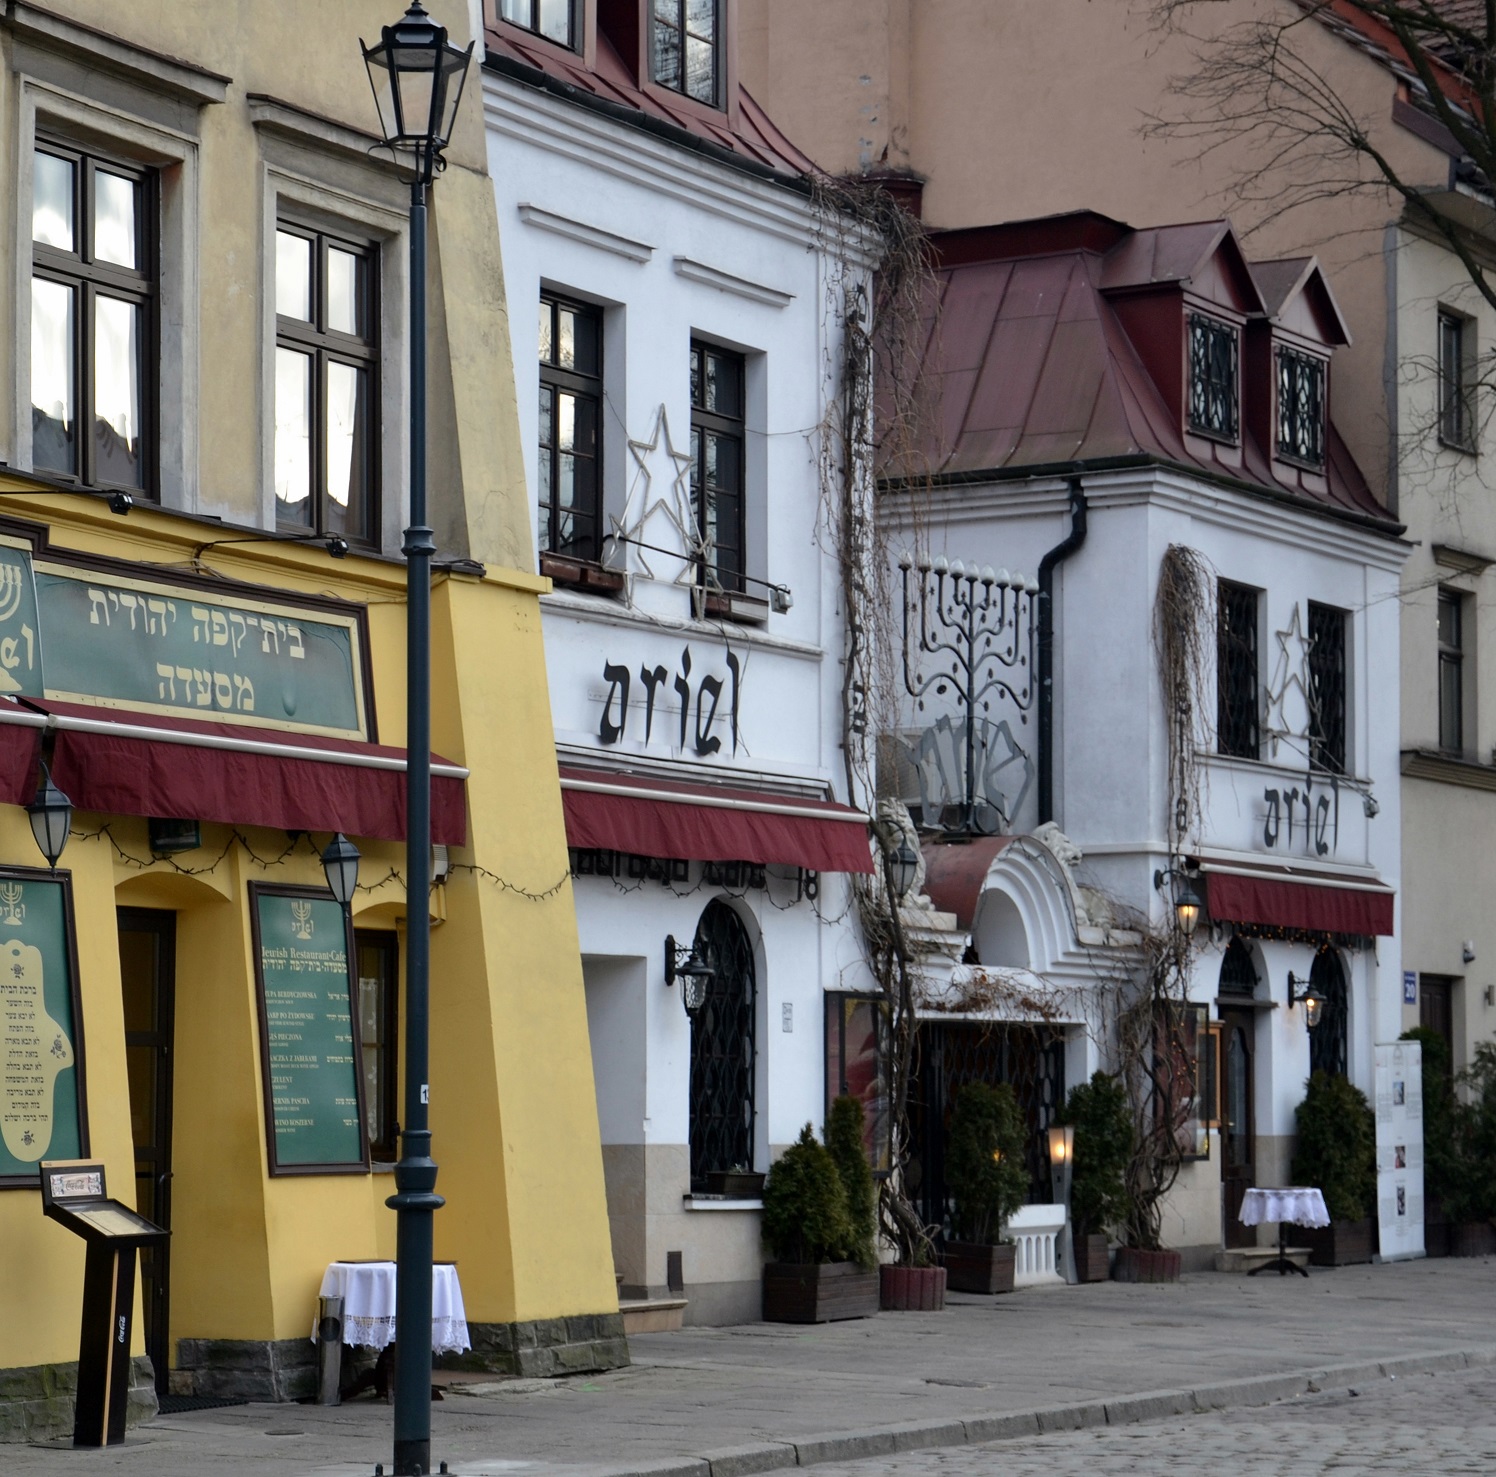 Foto: Kazimierz - Barrio Judío de Cracovia - Cracovia (Lesser Poland Voivodeship), Polonia